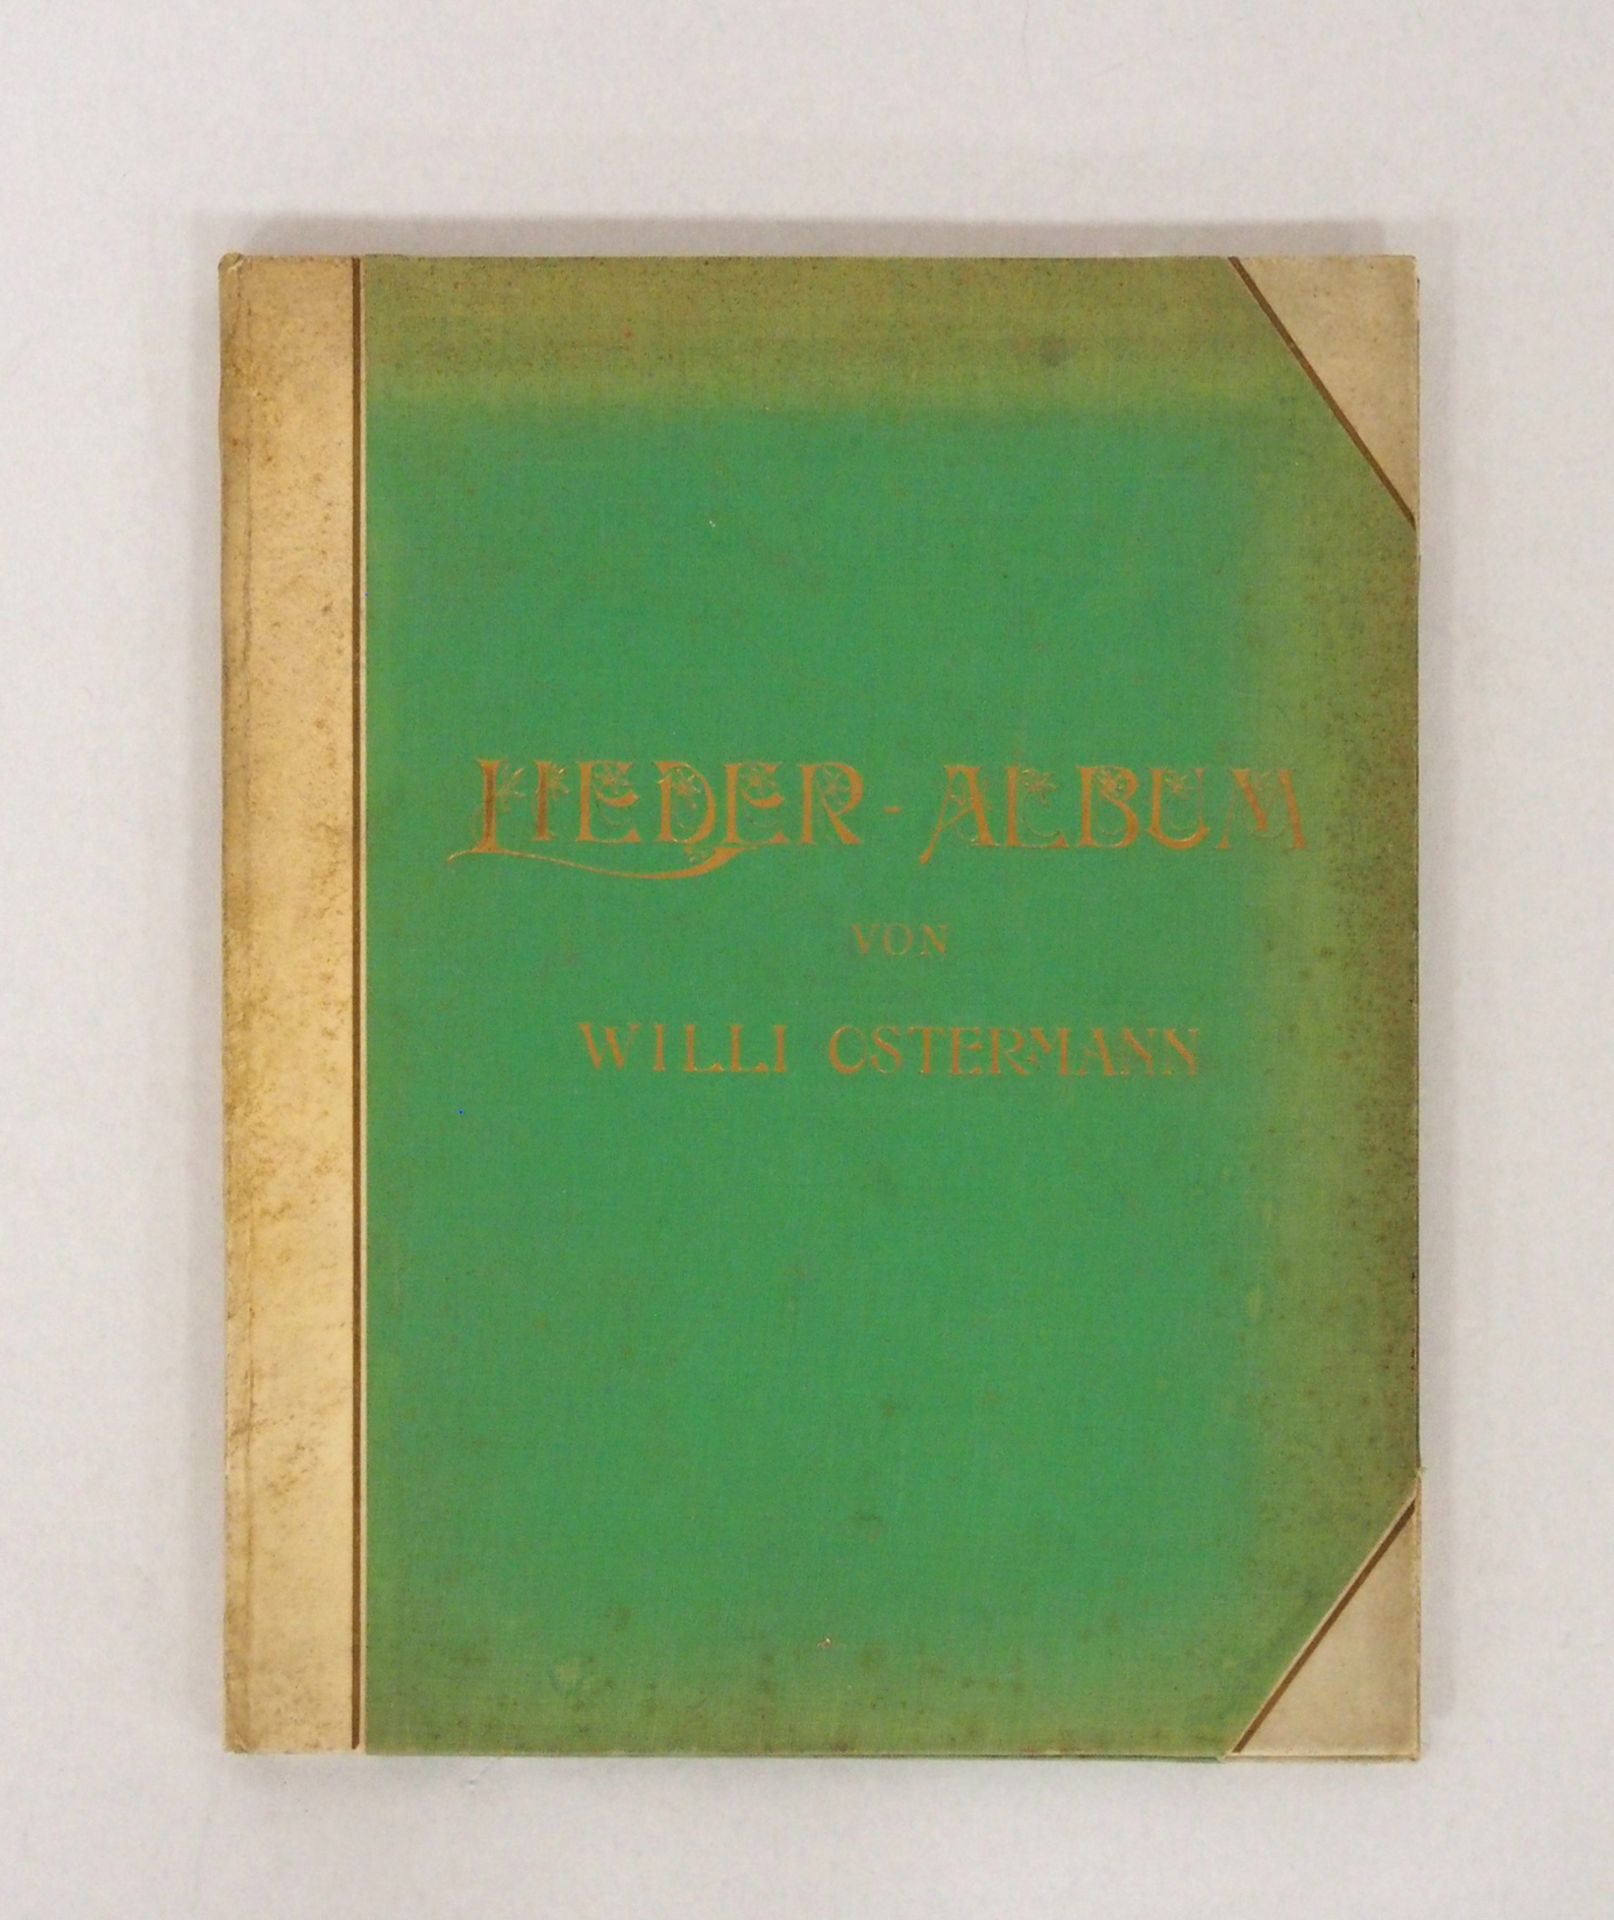 Lieder-Album von Willi Ostermann - Image 2 of 4